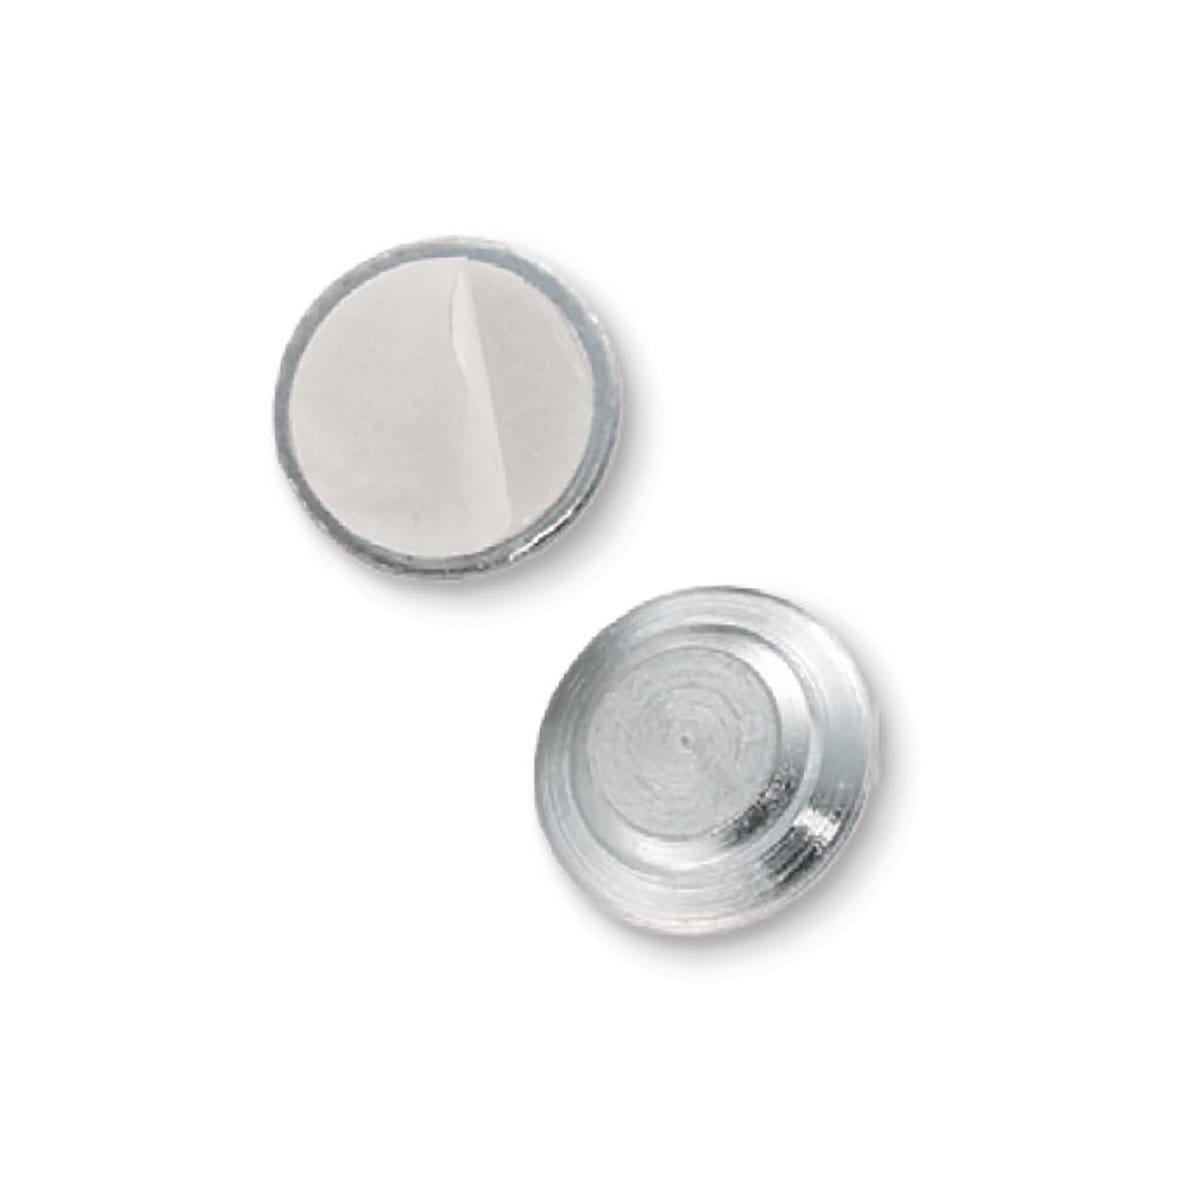 Magnetic Badge Finding, 1 Zinc-Plated Steel Encased Disc (p/n 5730-3030)